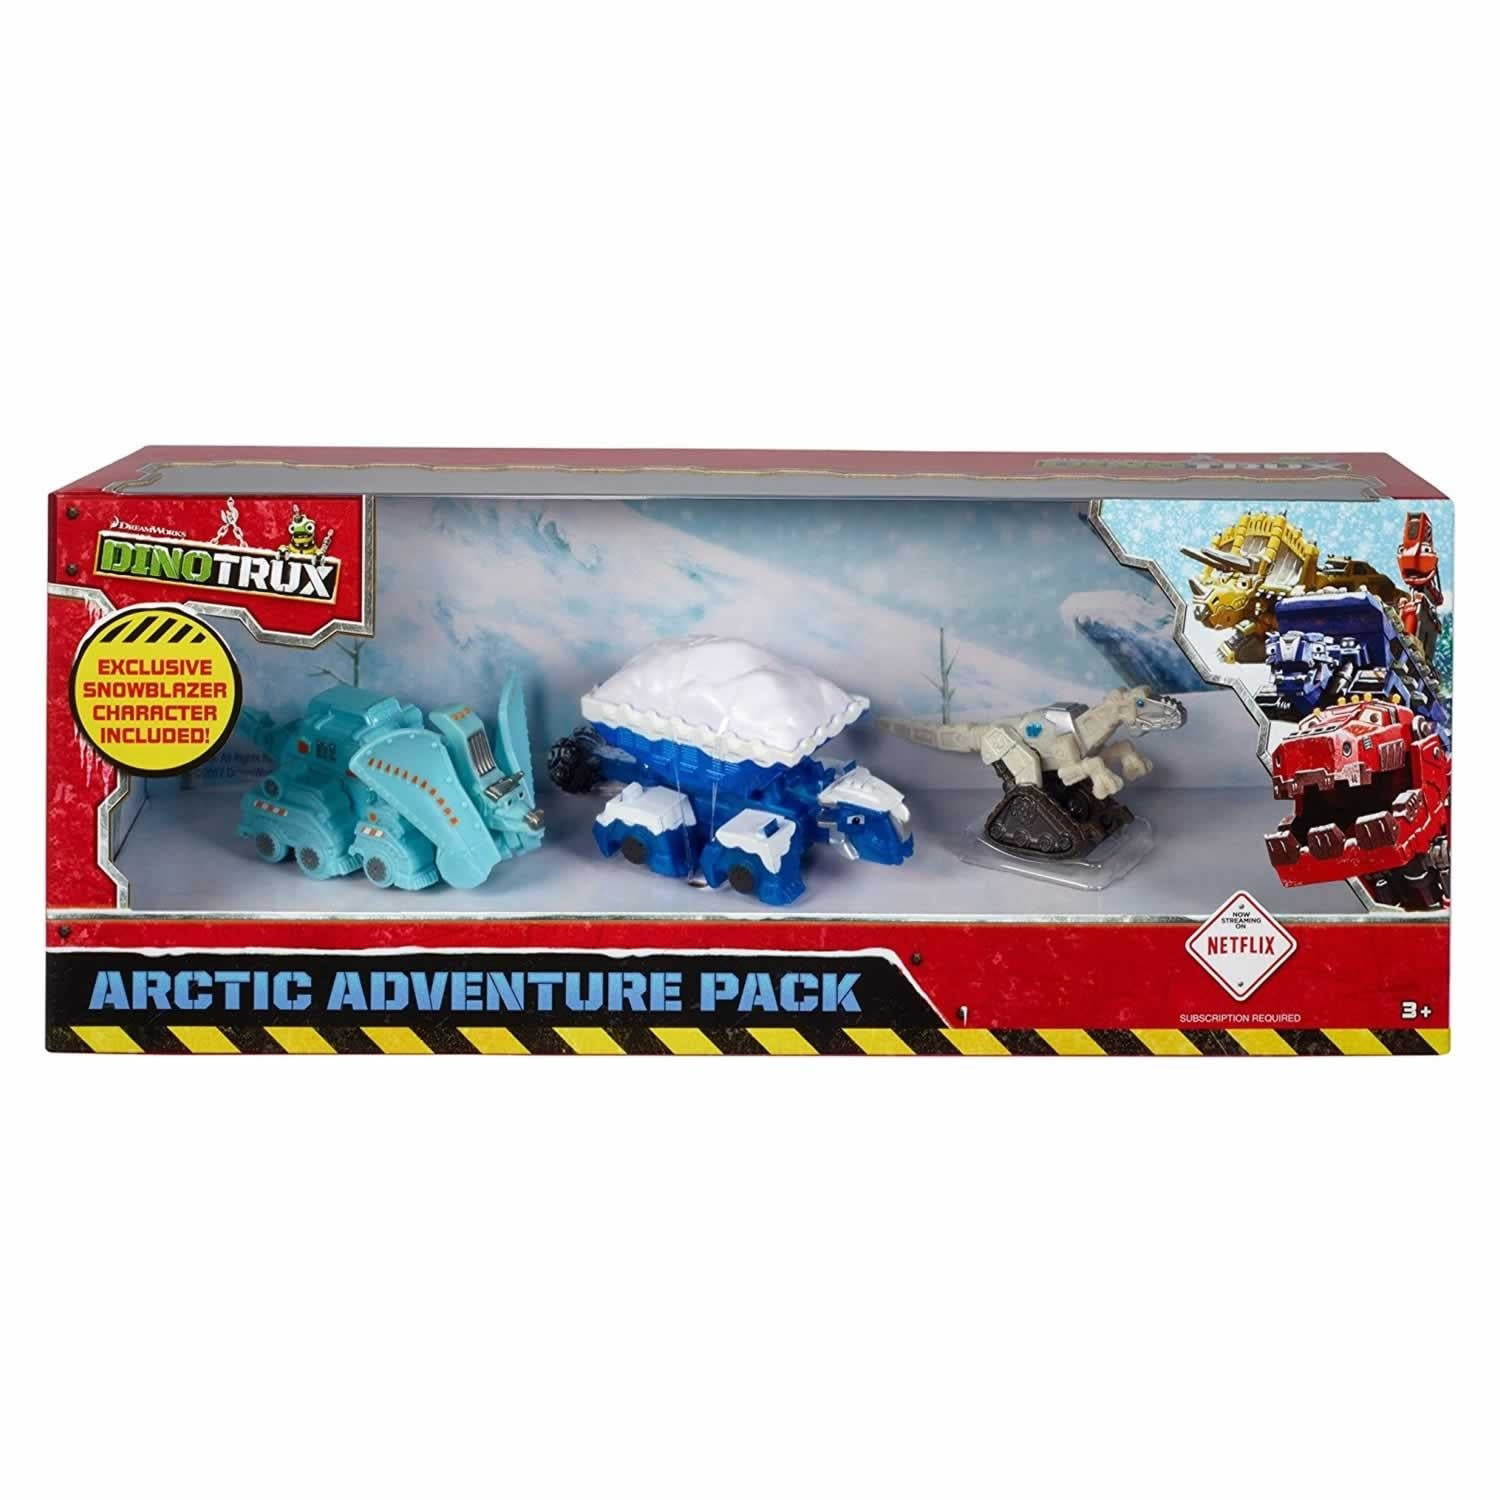 Dinotrux Arctic Adventure Pack